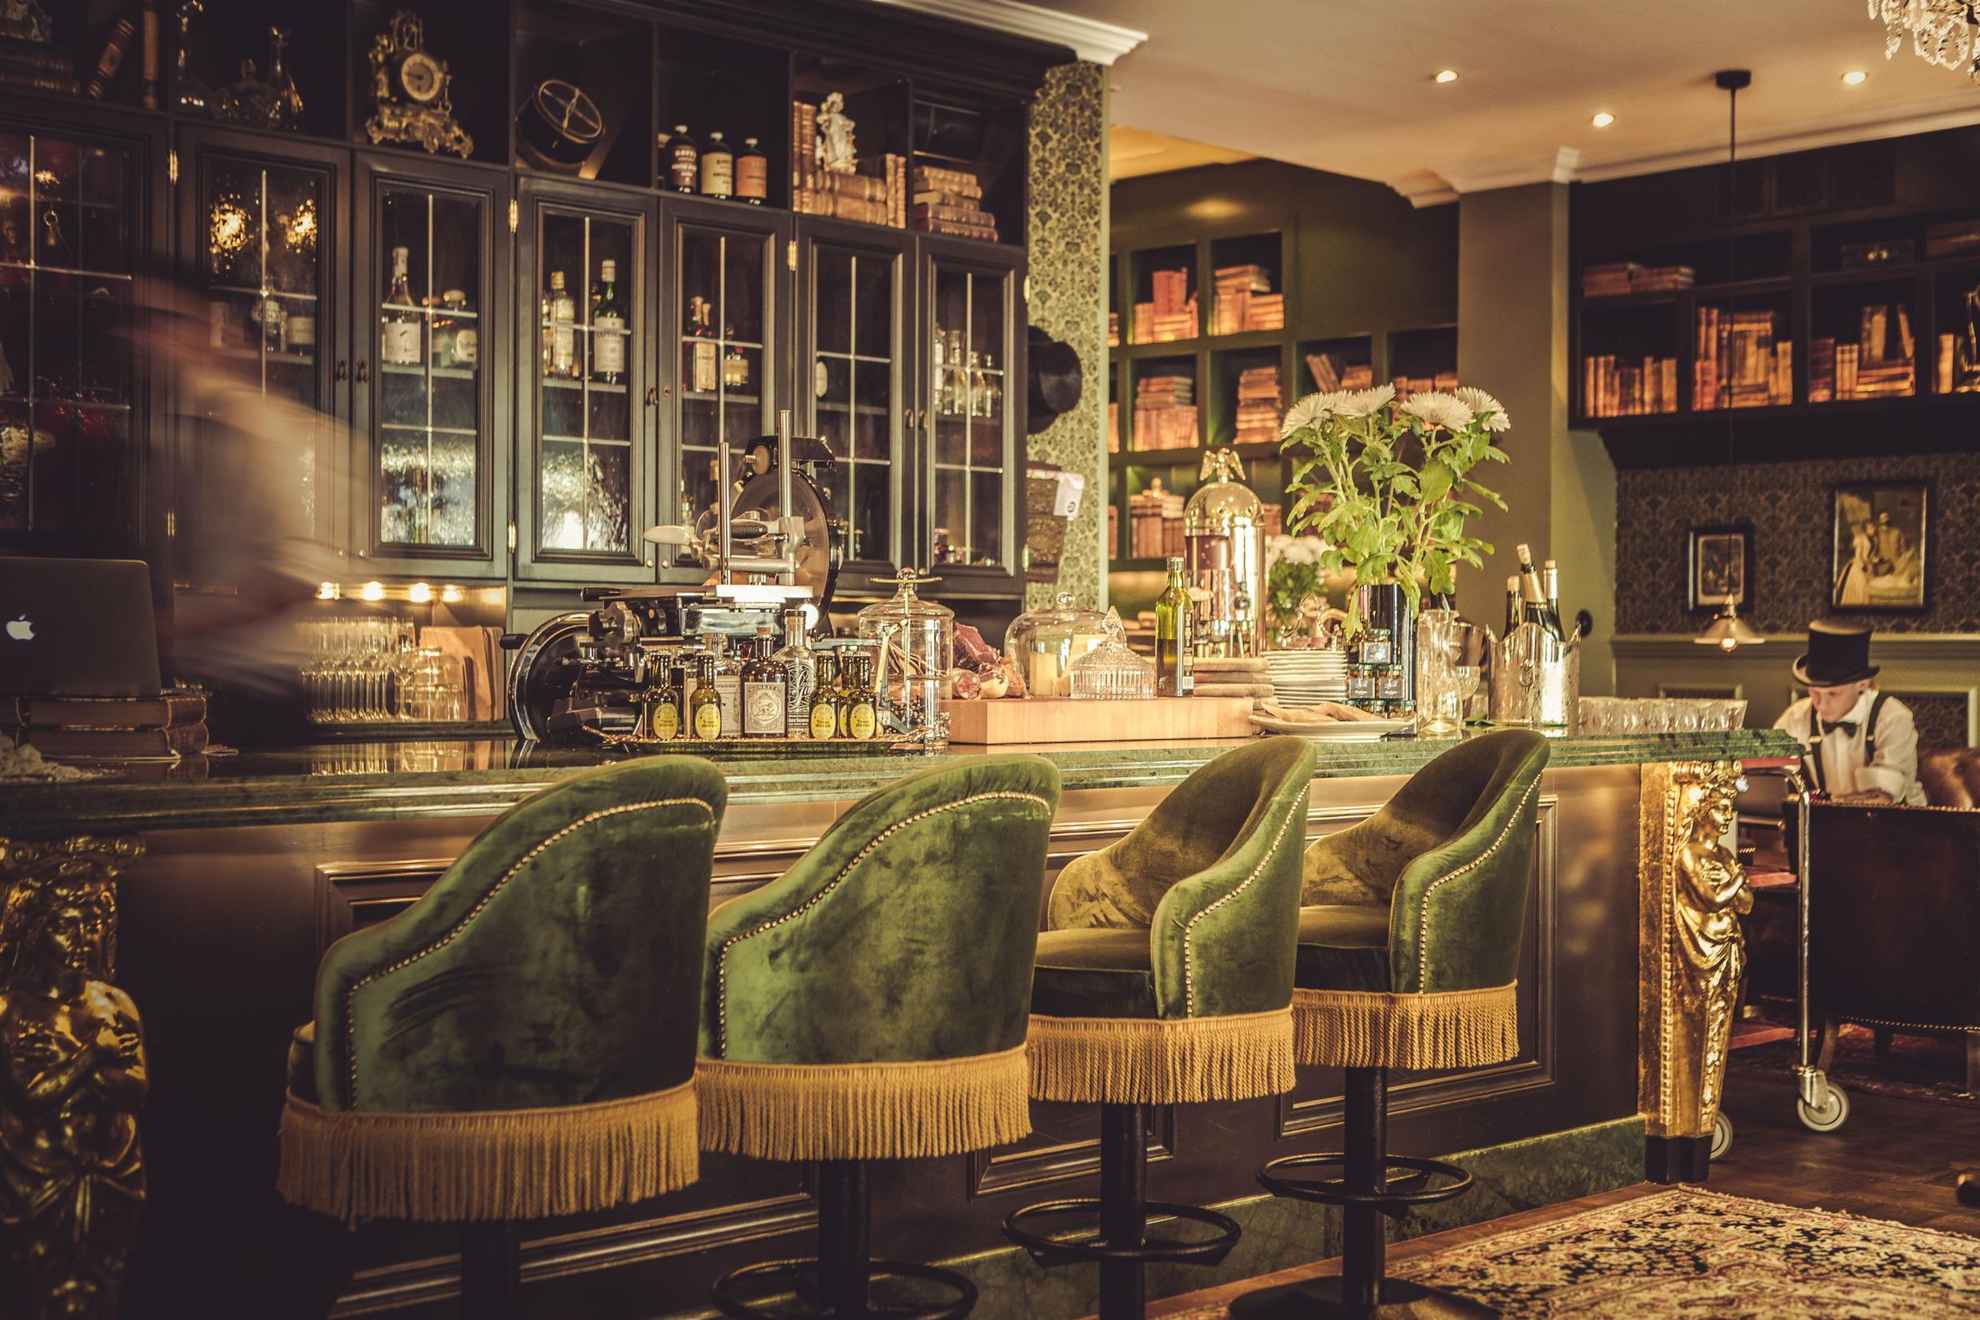 De bar van hotel Pigalle, met groenfluwelen stoelen, houten planken en gouden details. Iemand beweegt achter de bar.